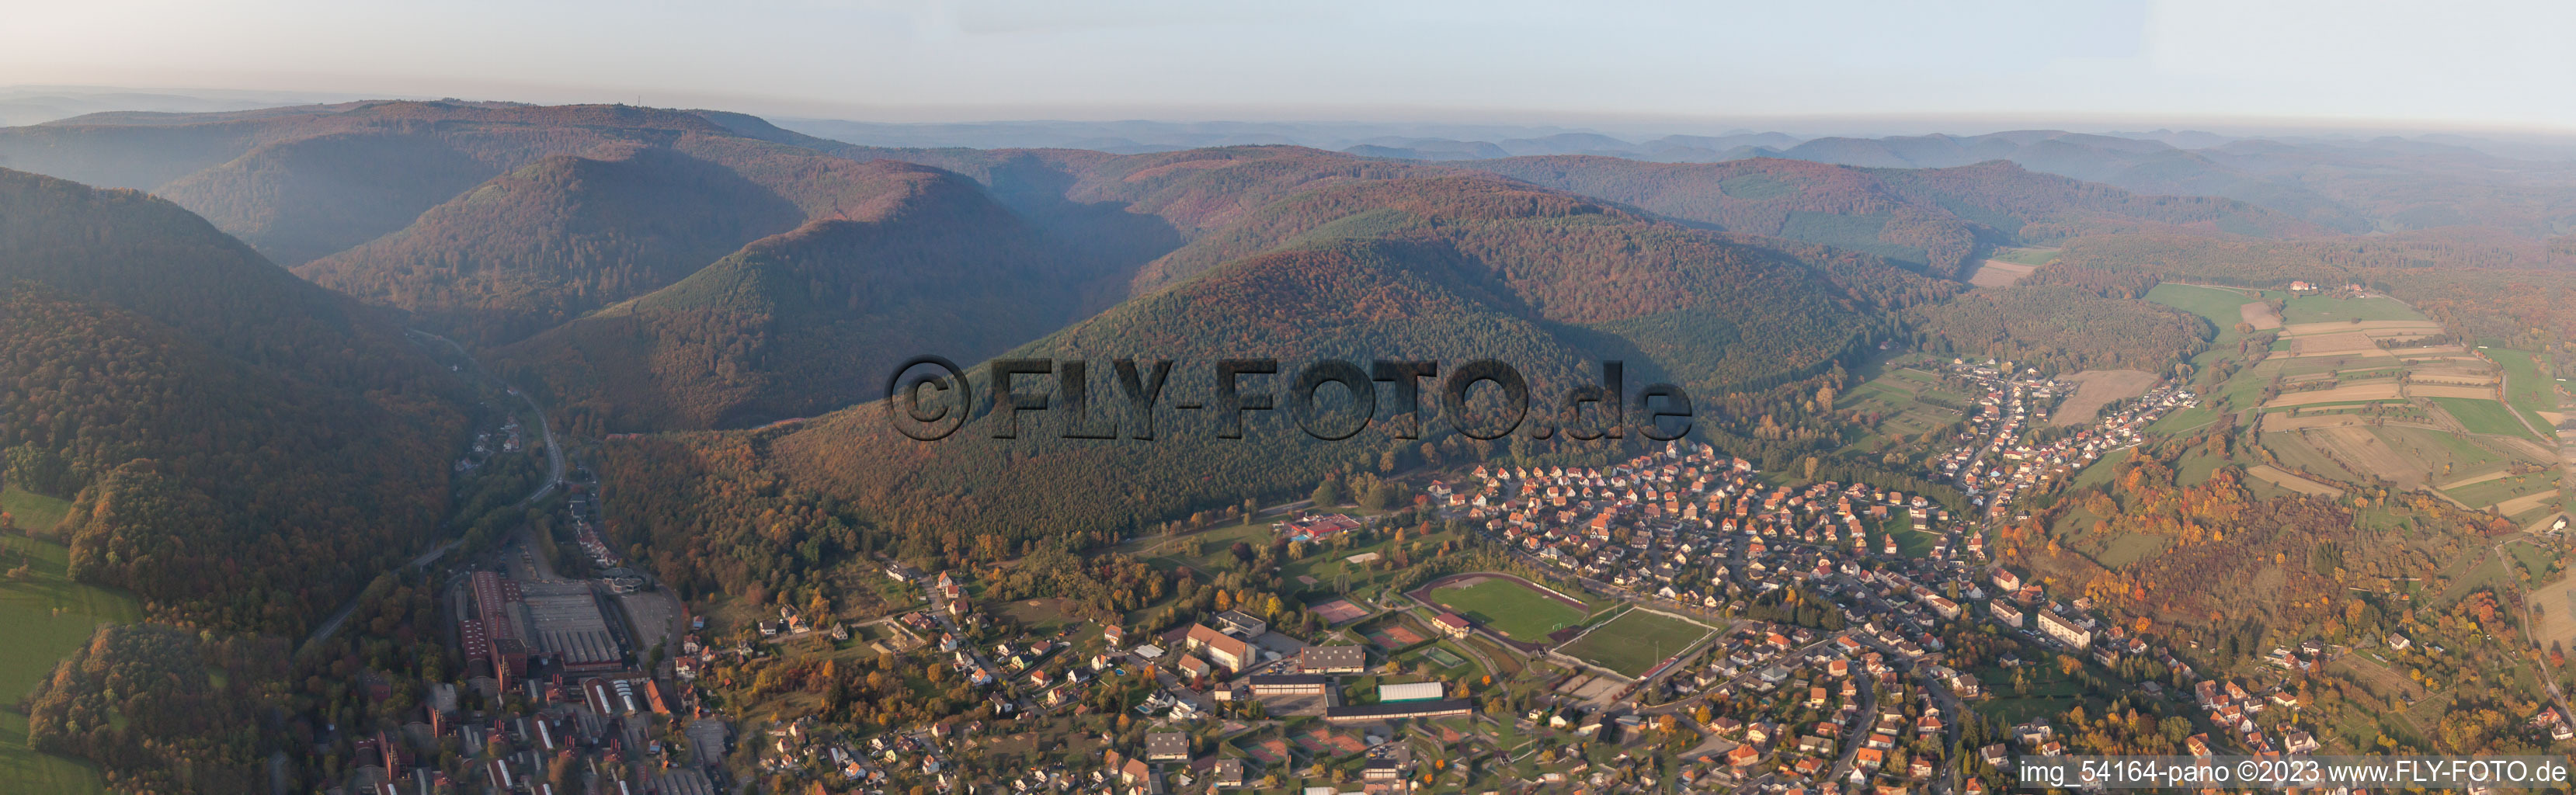 Luftbild von Panorama in Niederbronn-les-Bains im Bundesland Bas-Rhin, Frankreich